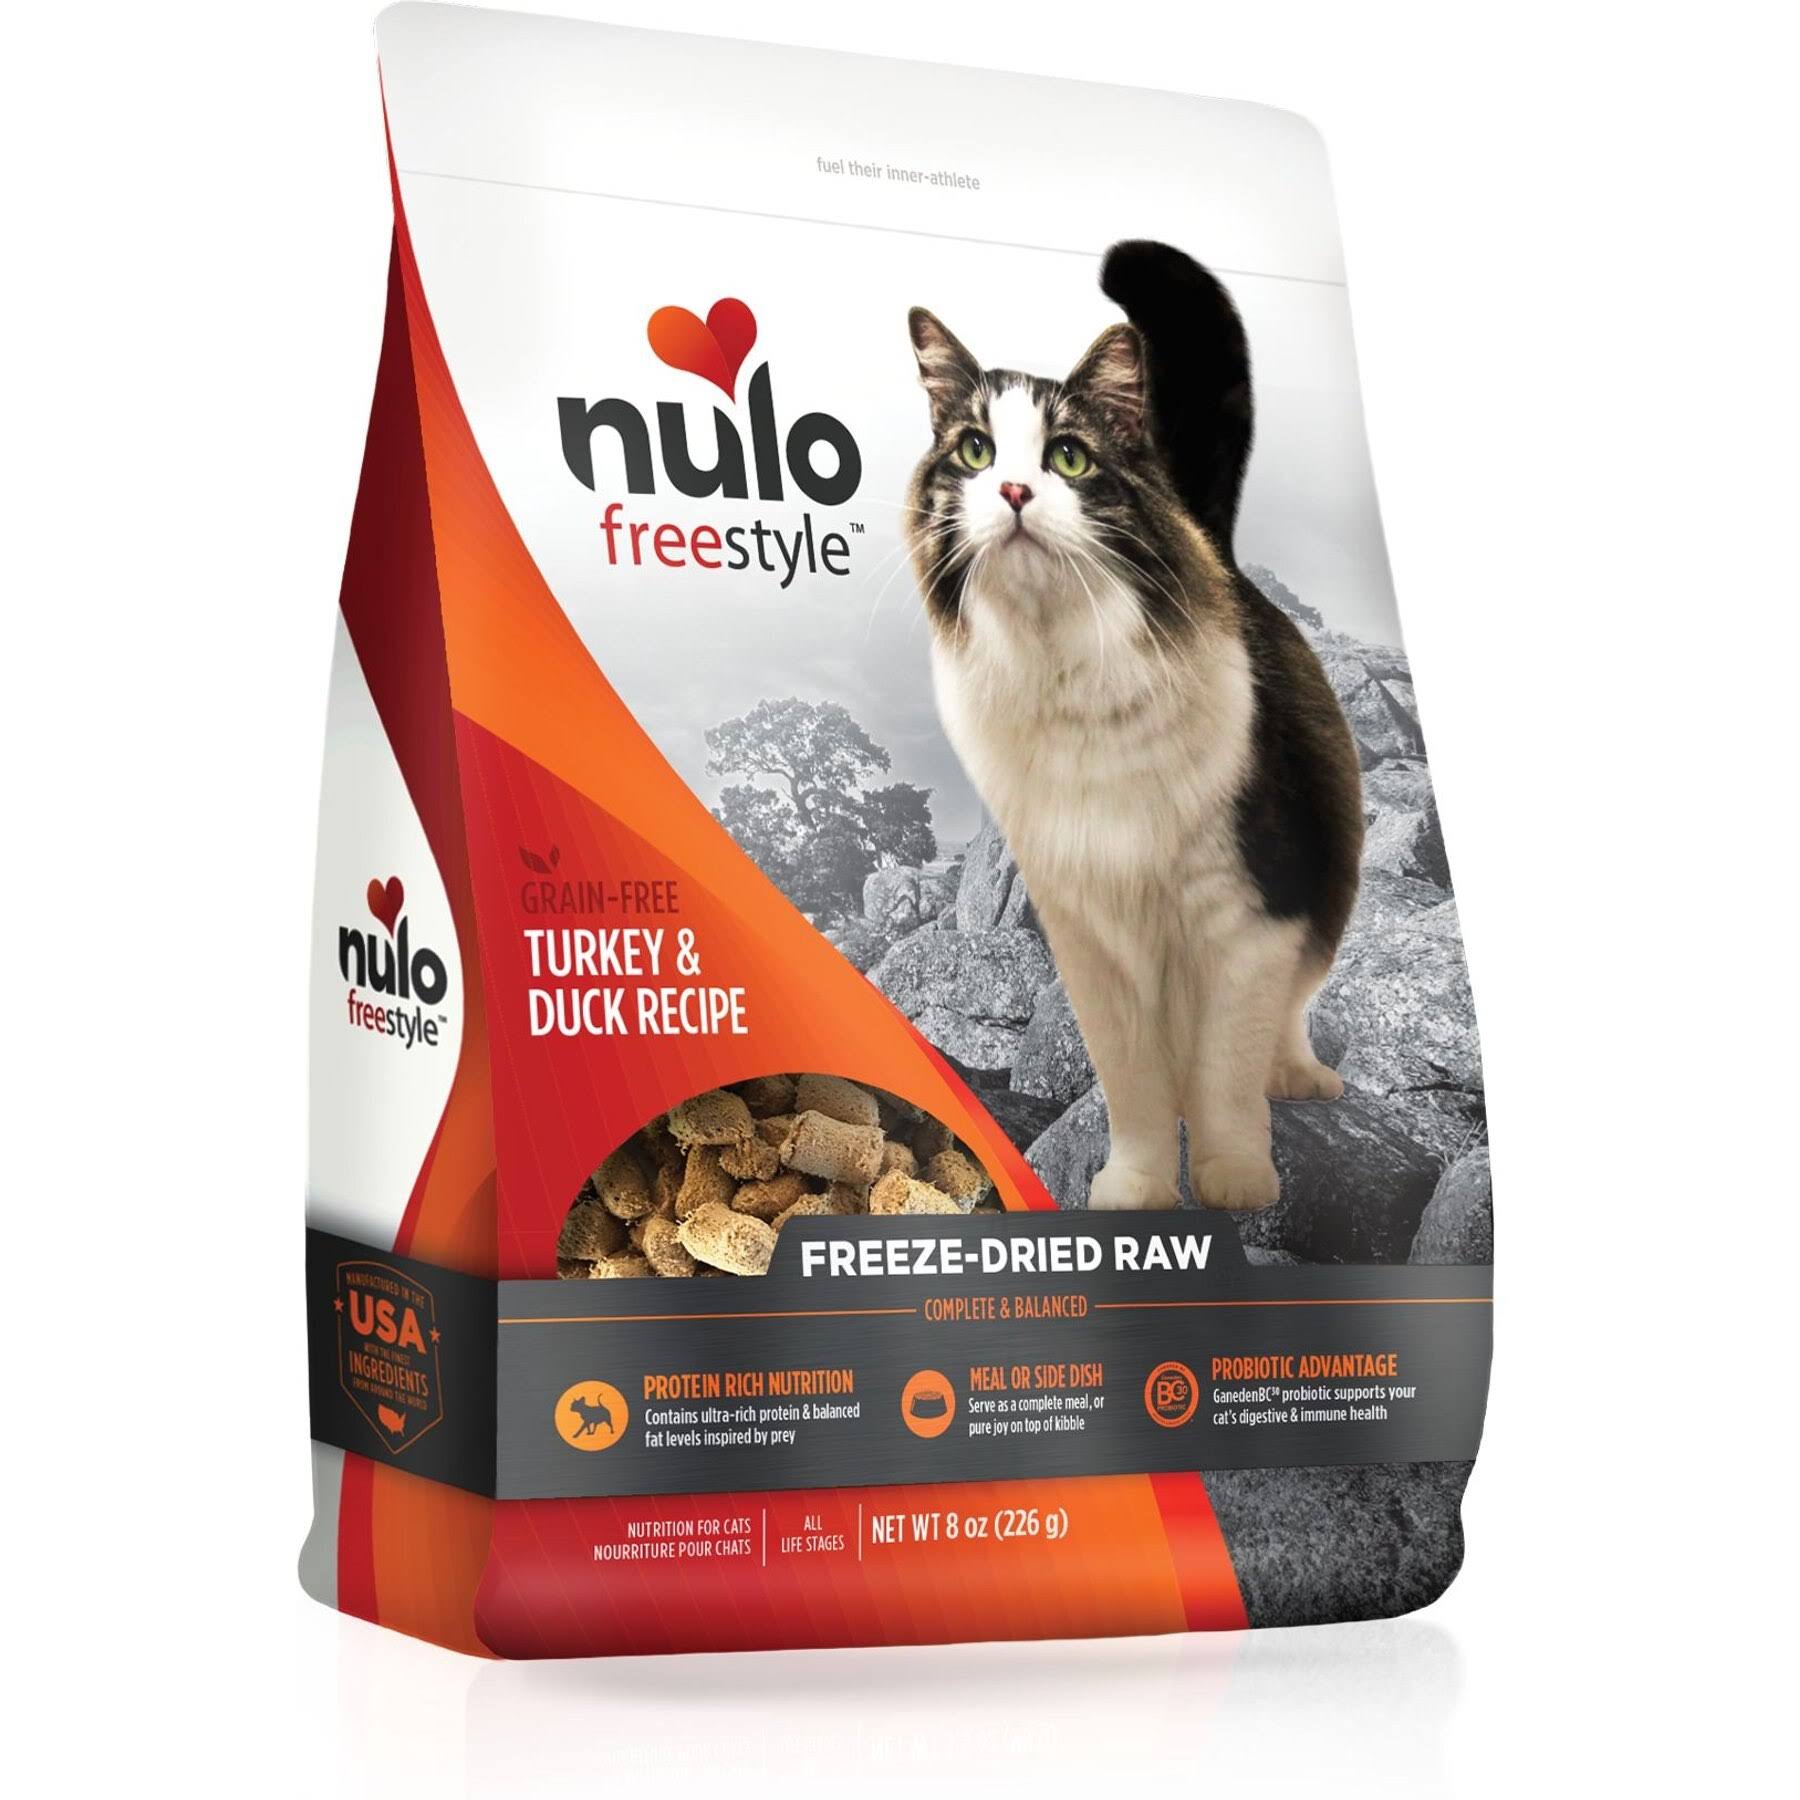 Nulo Freestyle Turkey & Duck Freeze-Dried Raw Cat Food, 8-oz